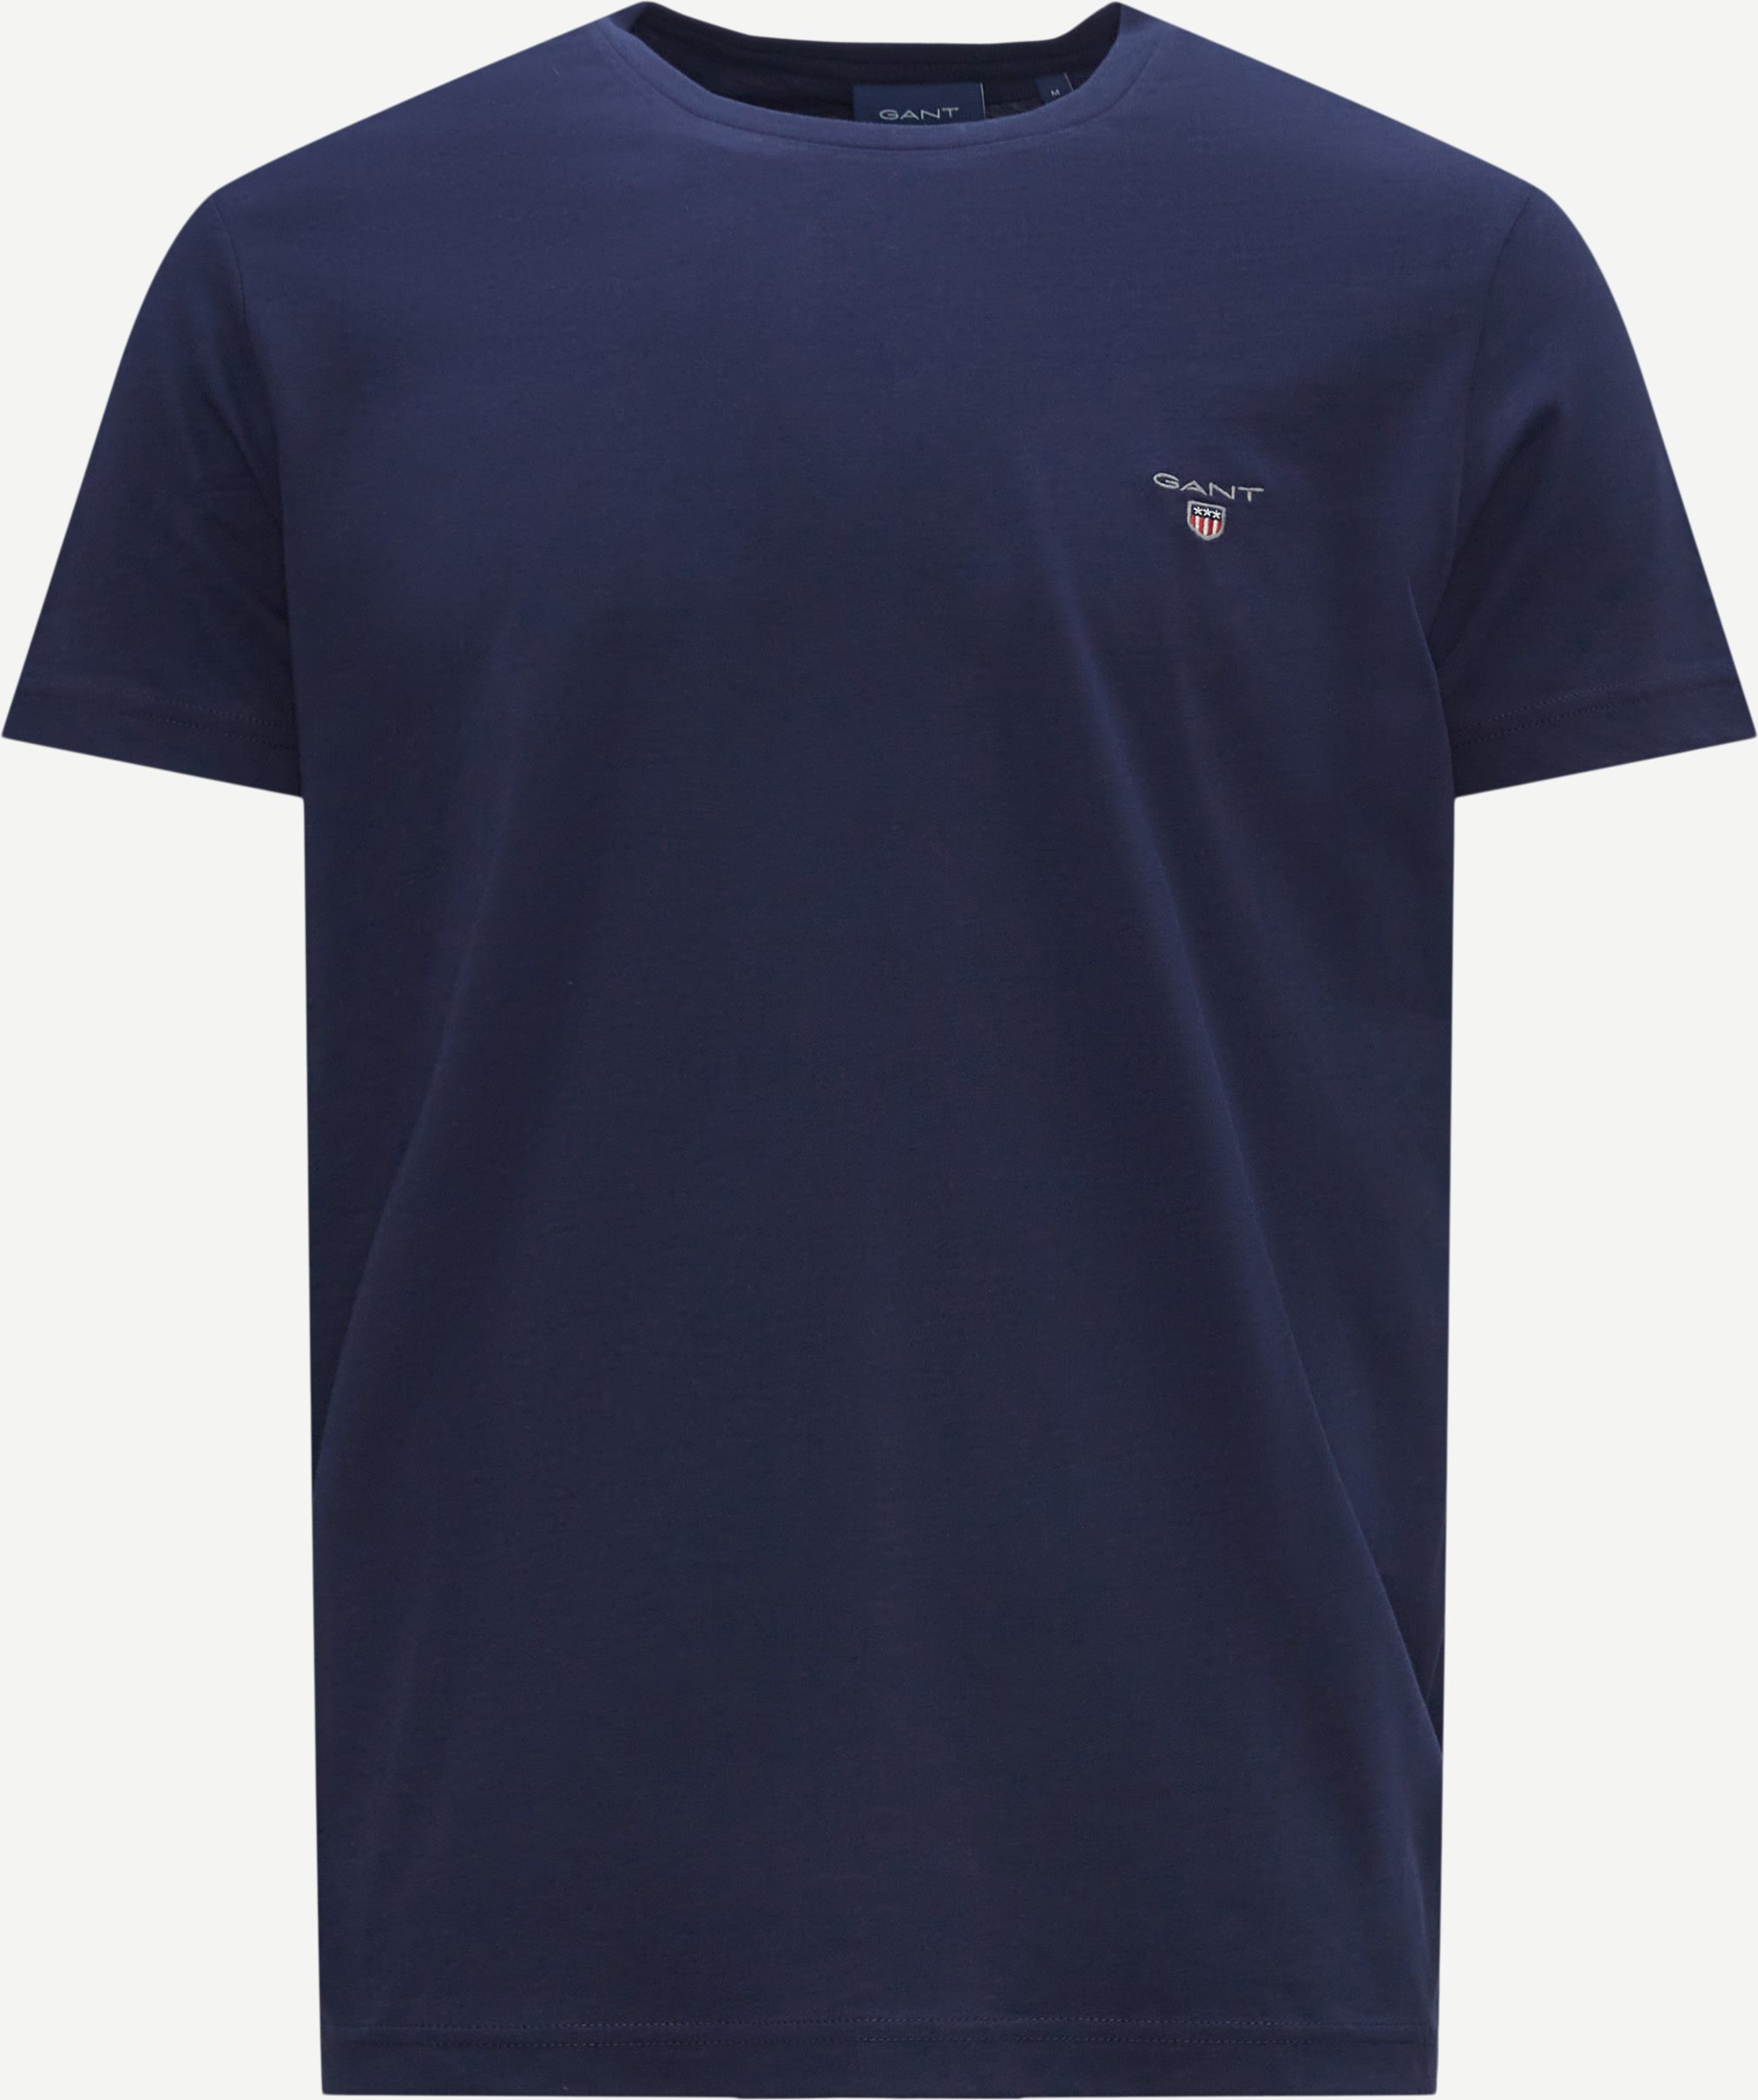 Original T-shirt - T-shirts - Regular fit - Blå